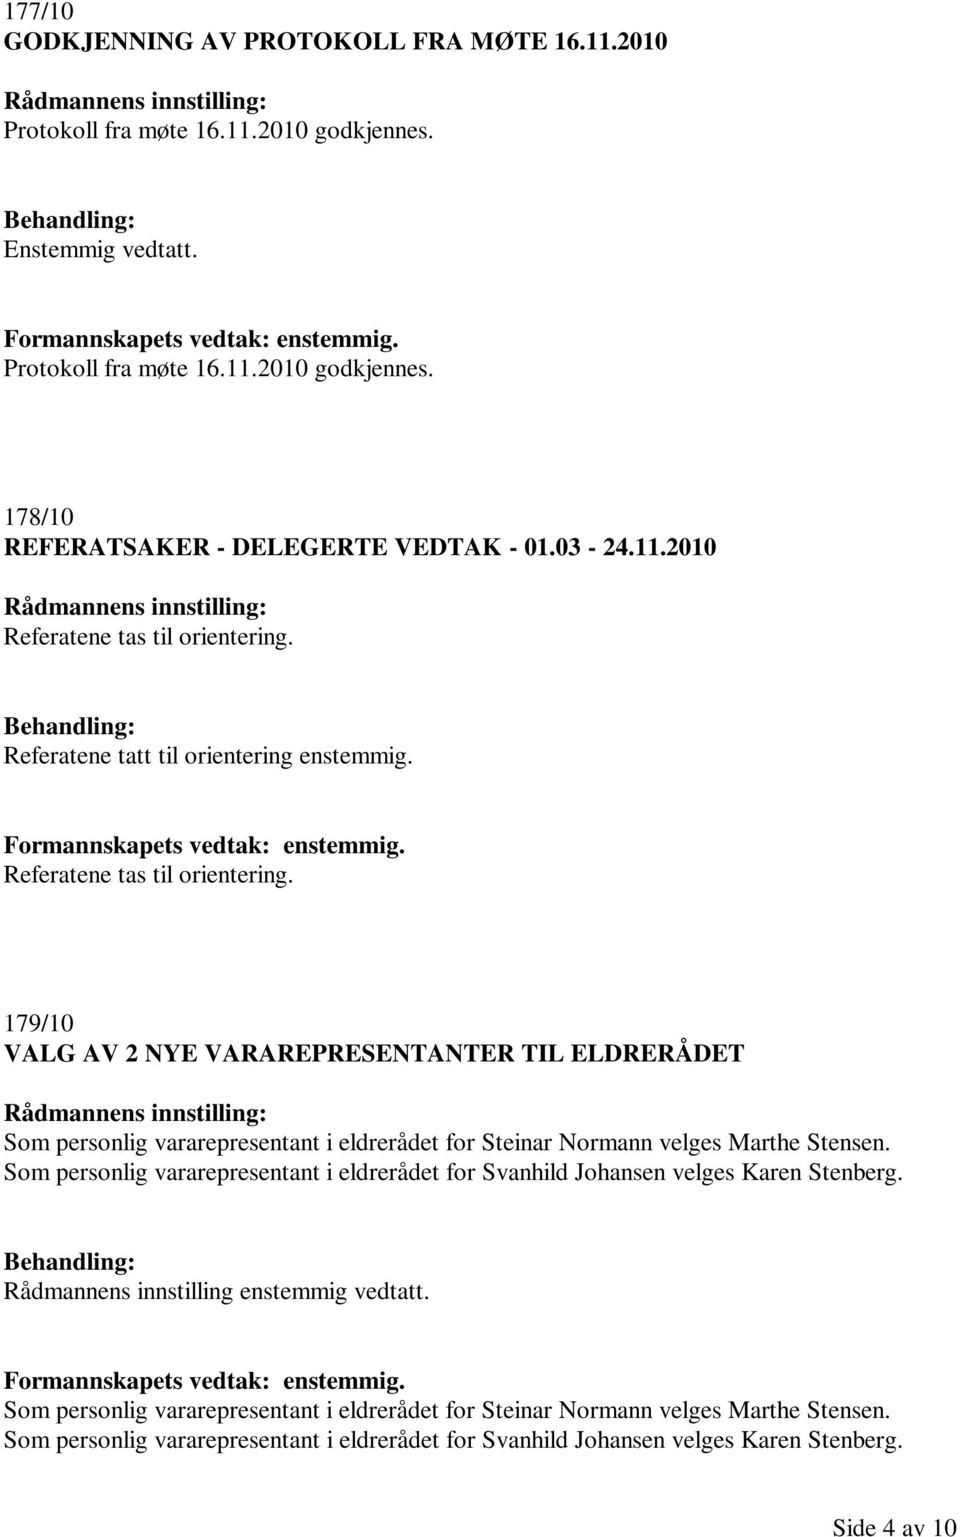 Som personlig vararepresentant i eldrerådet for Svanhild Johansen velges Karen Stenberg. Rådmannens innstilling enstemmig vedtatt. Formannskapets vedtak: enstemmig.